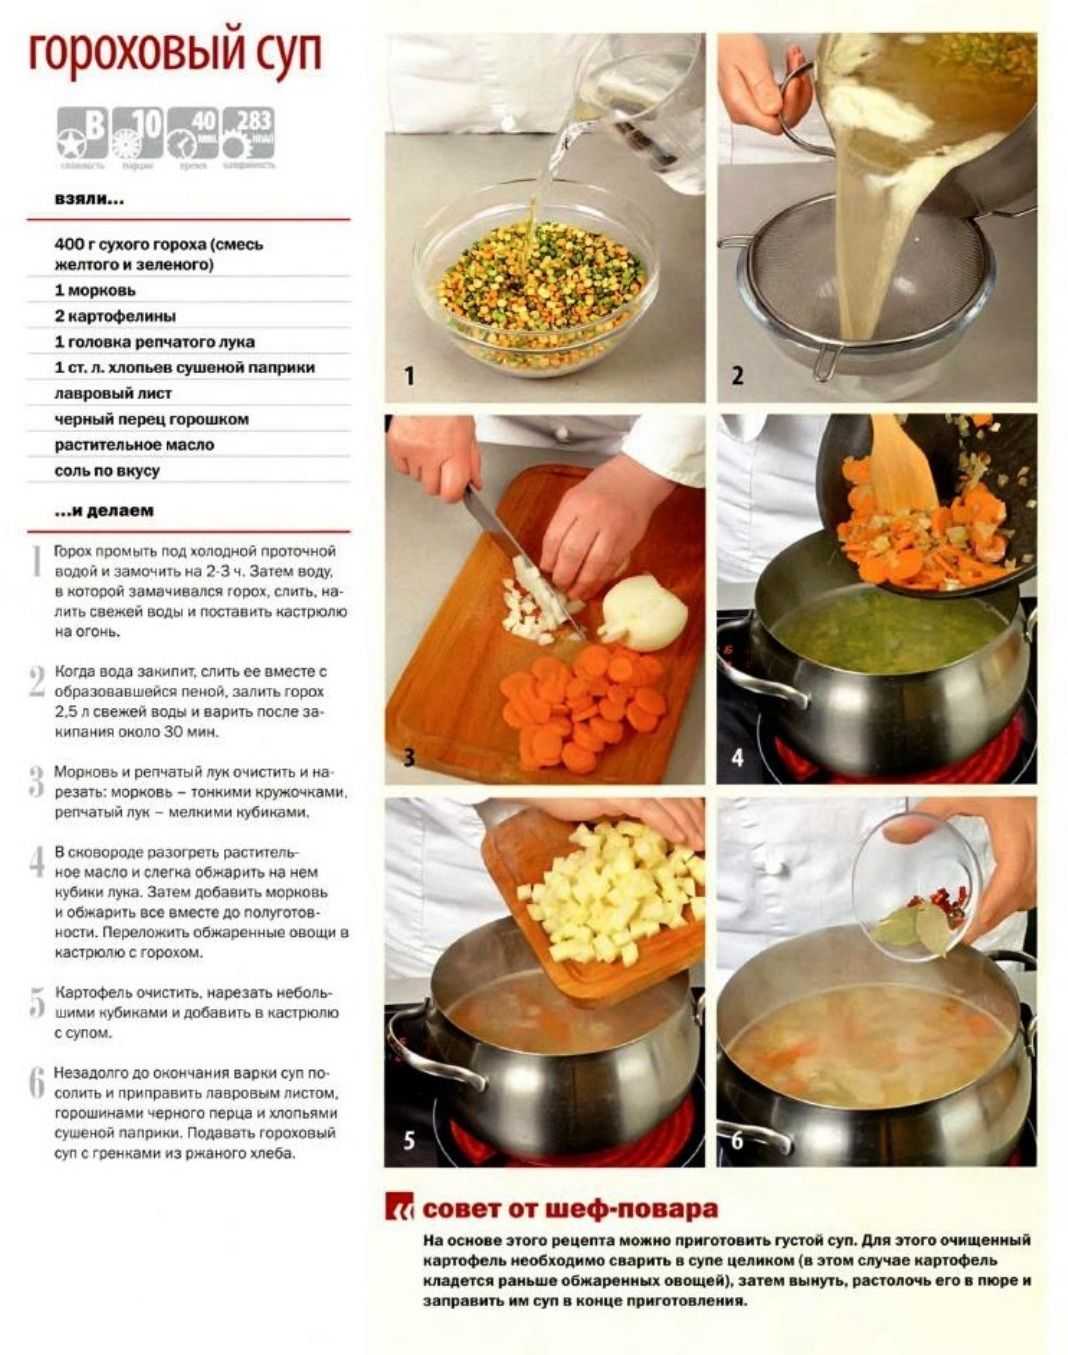 Сколько нужно гороха на кастрюлю супа. Технология приготовления горохового супа. Схема приготовления горохового супа. Суп гороховый рецептура. Технологическое приготовление горохового супа.